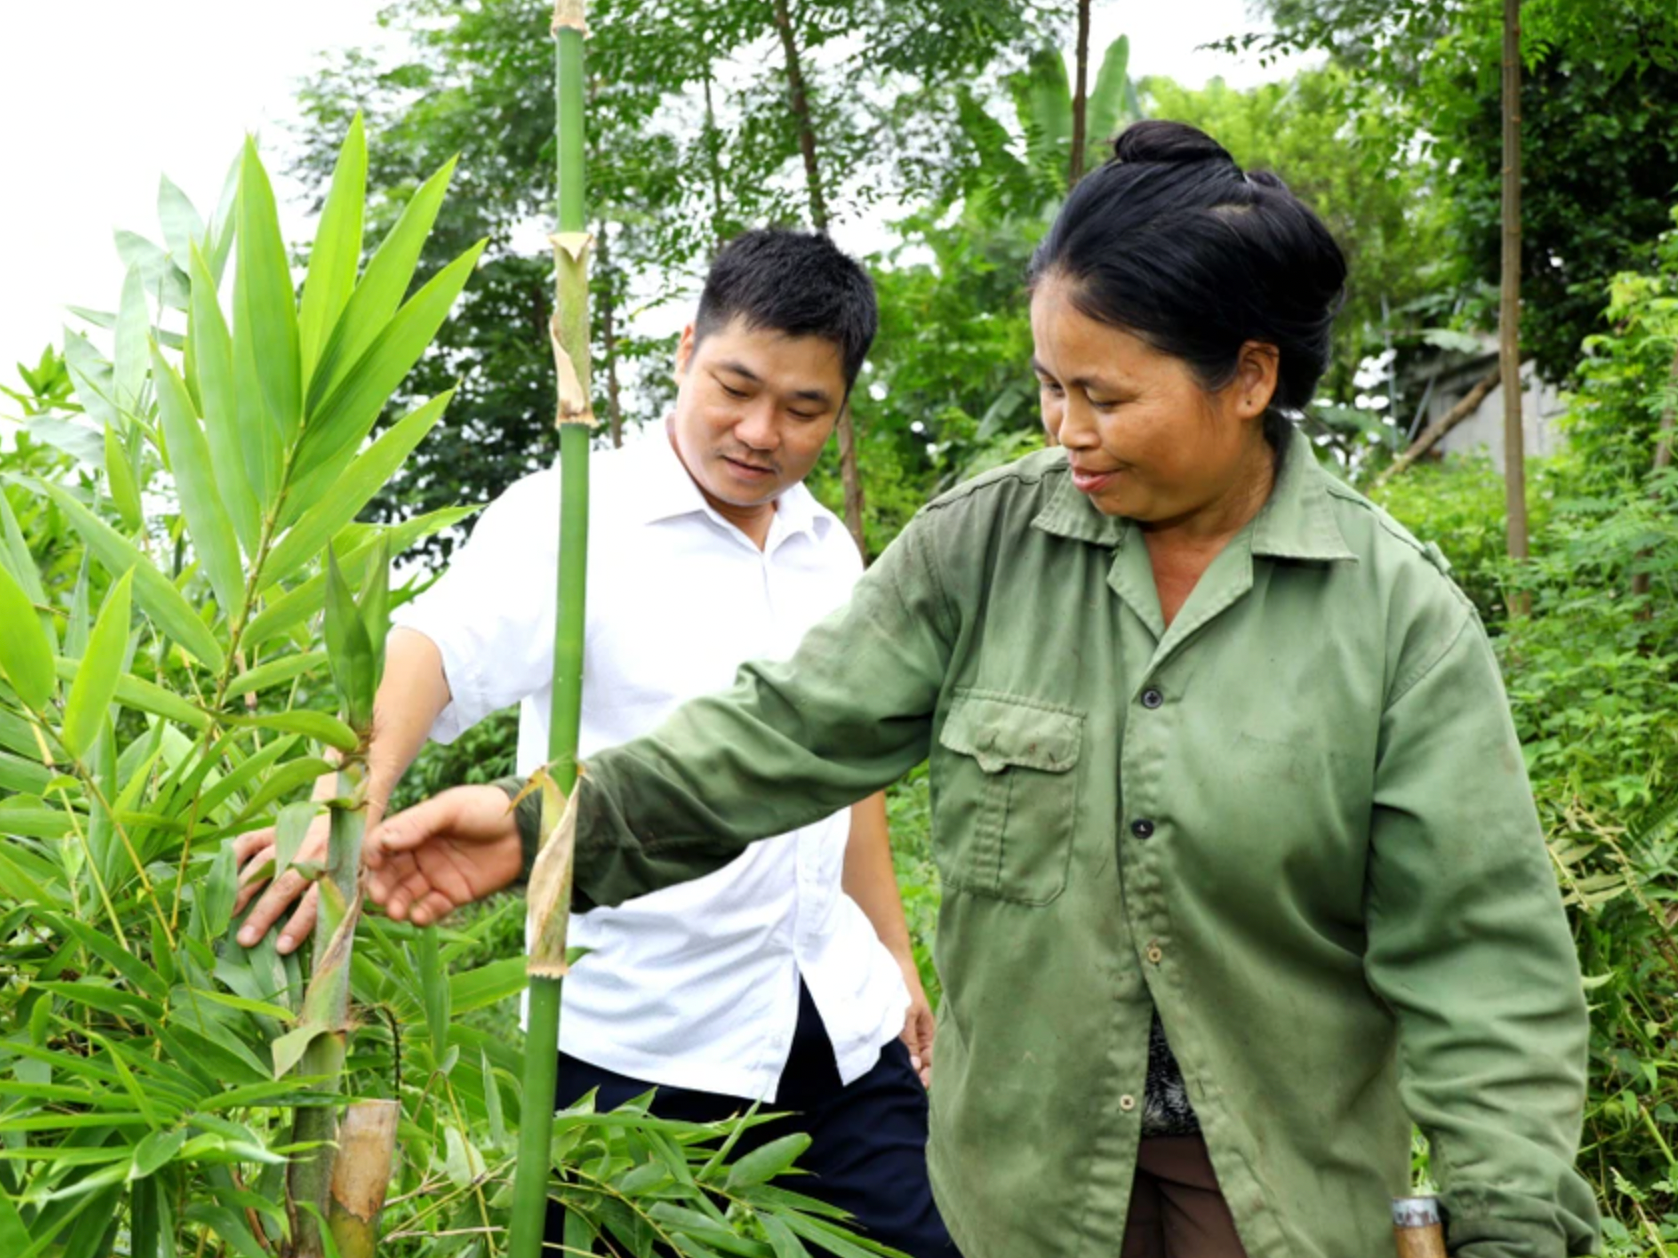 bna_Người dân Châu Thắng chăm sóc cây lùng cho thu nhập bền vững ảnh Nguyên Nguyên.png